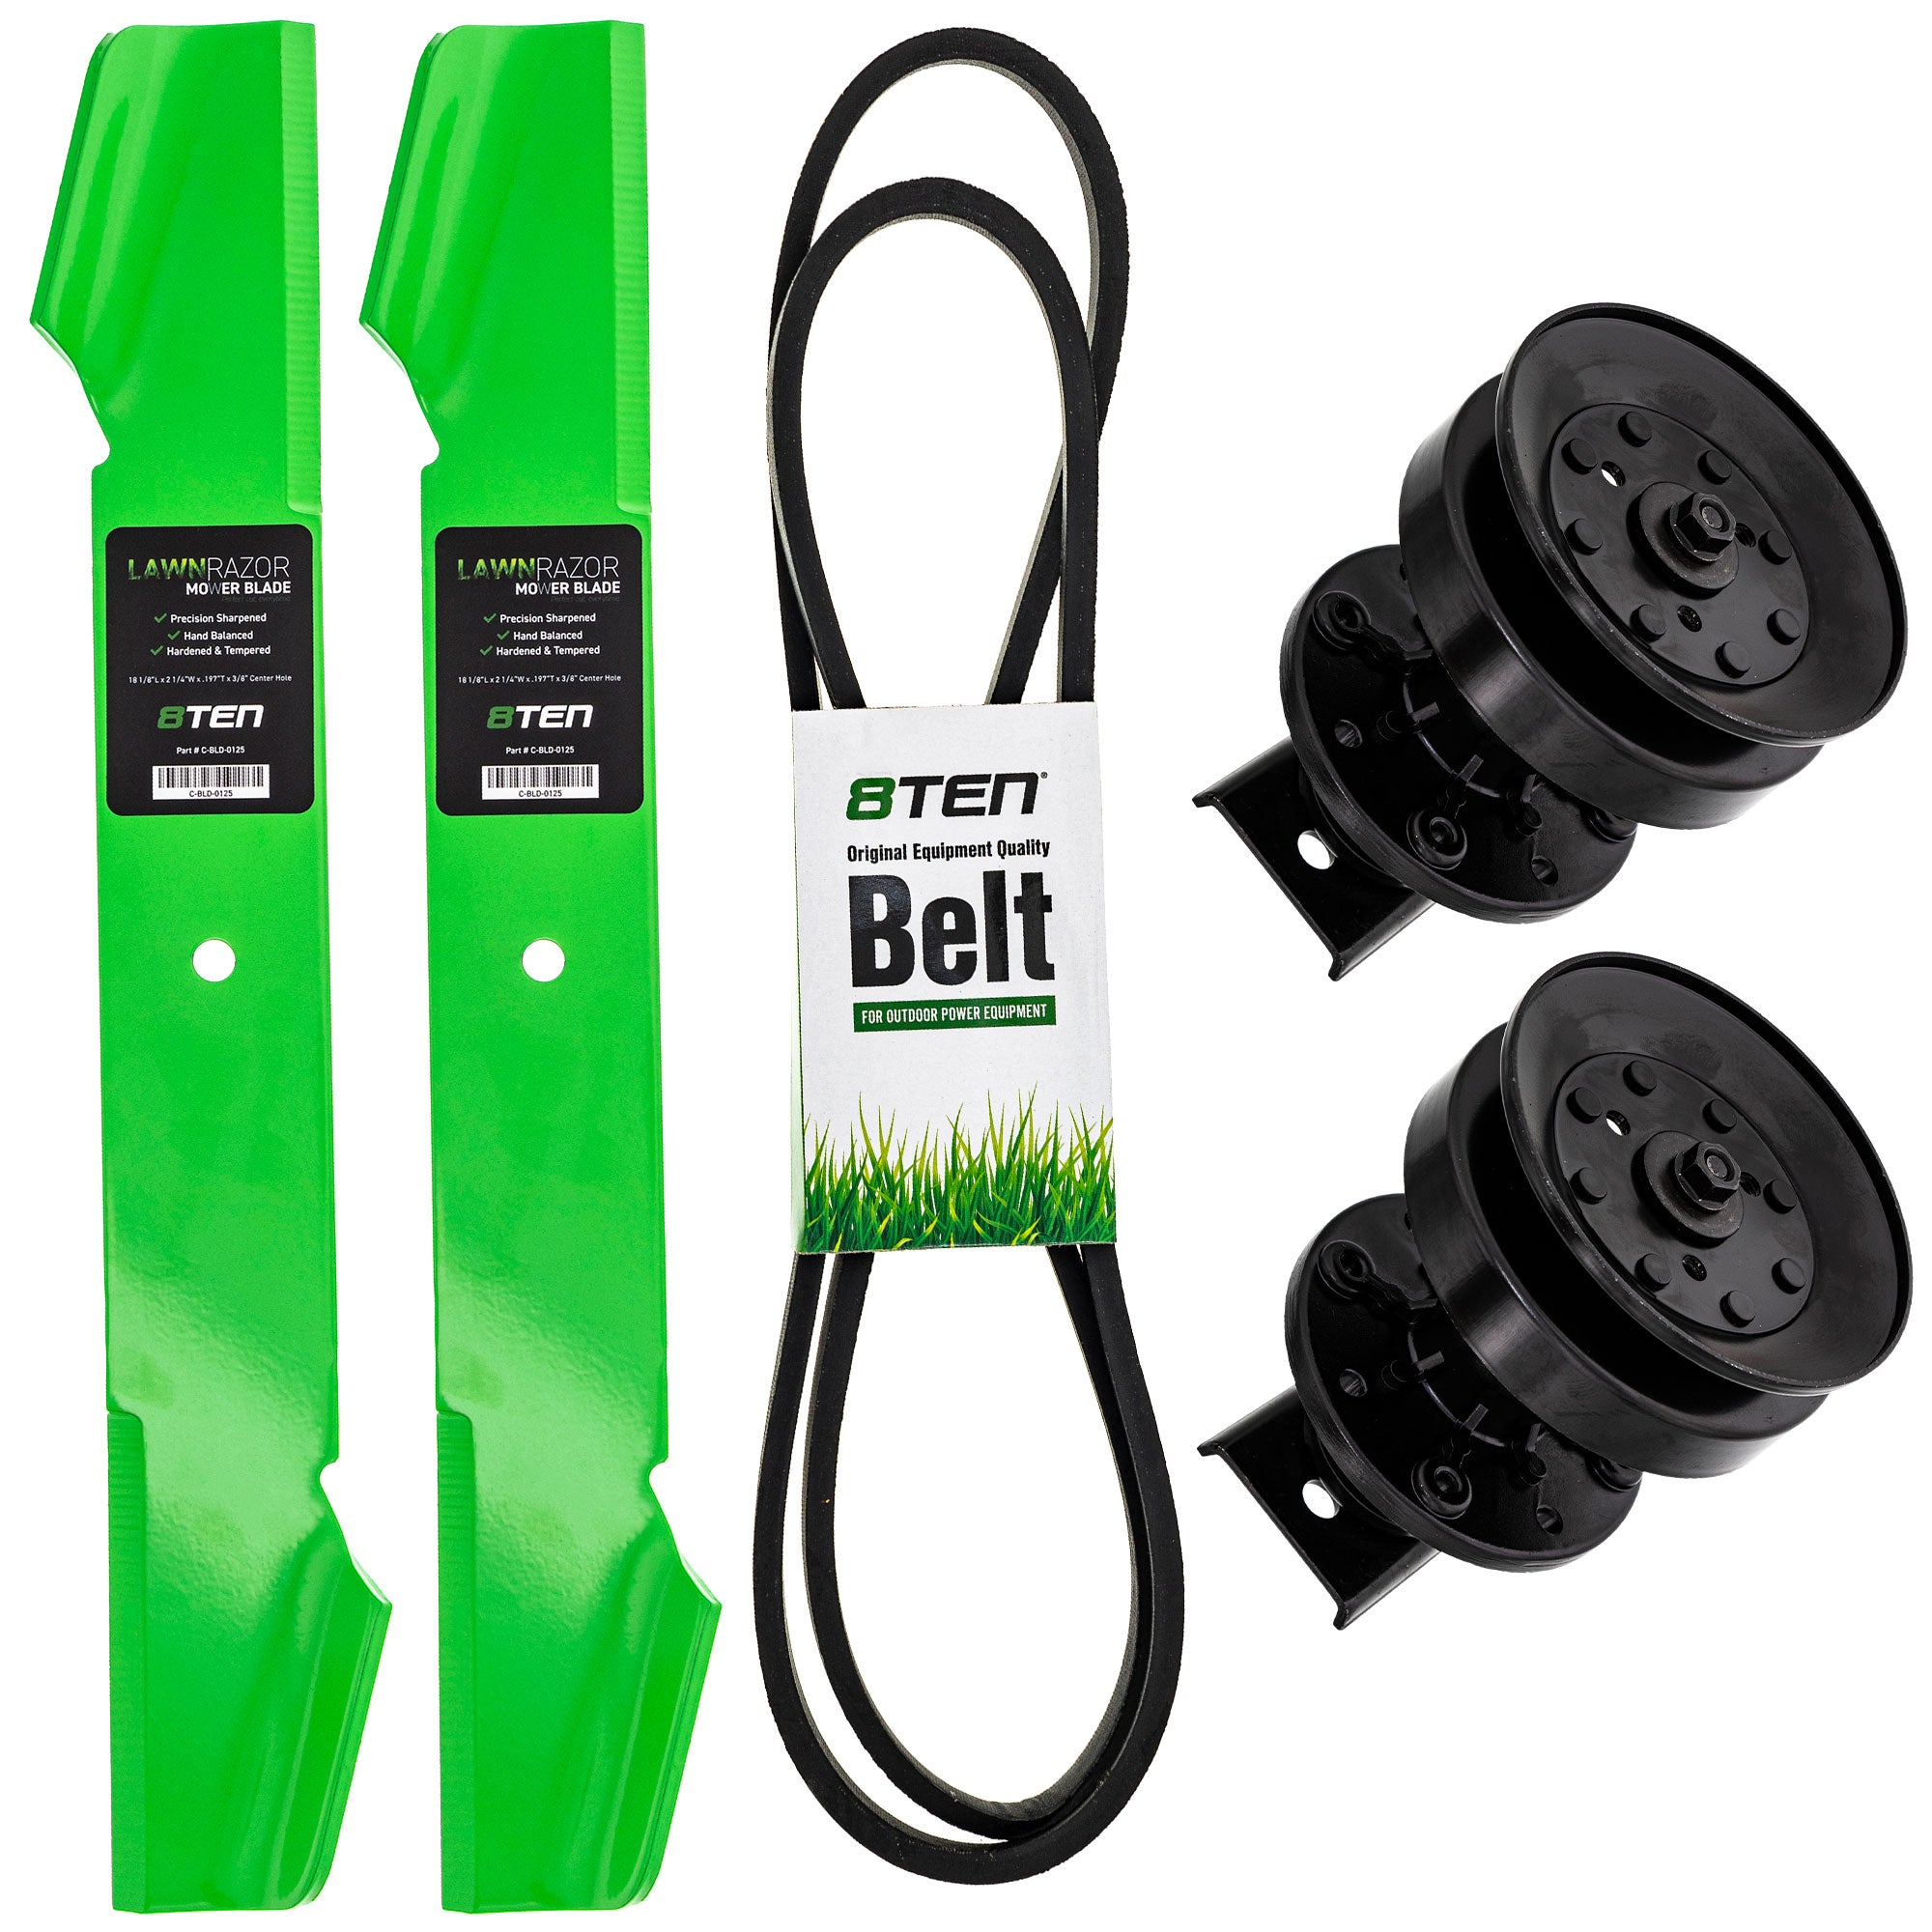 Blade Spindle Belt Deck Kit for X1236A Pro LT920-12 LT112 8TEN MK1010021